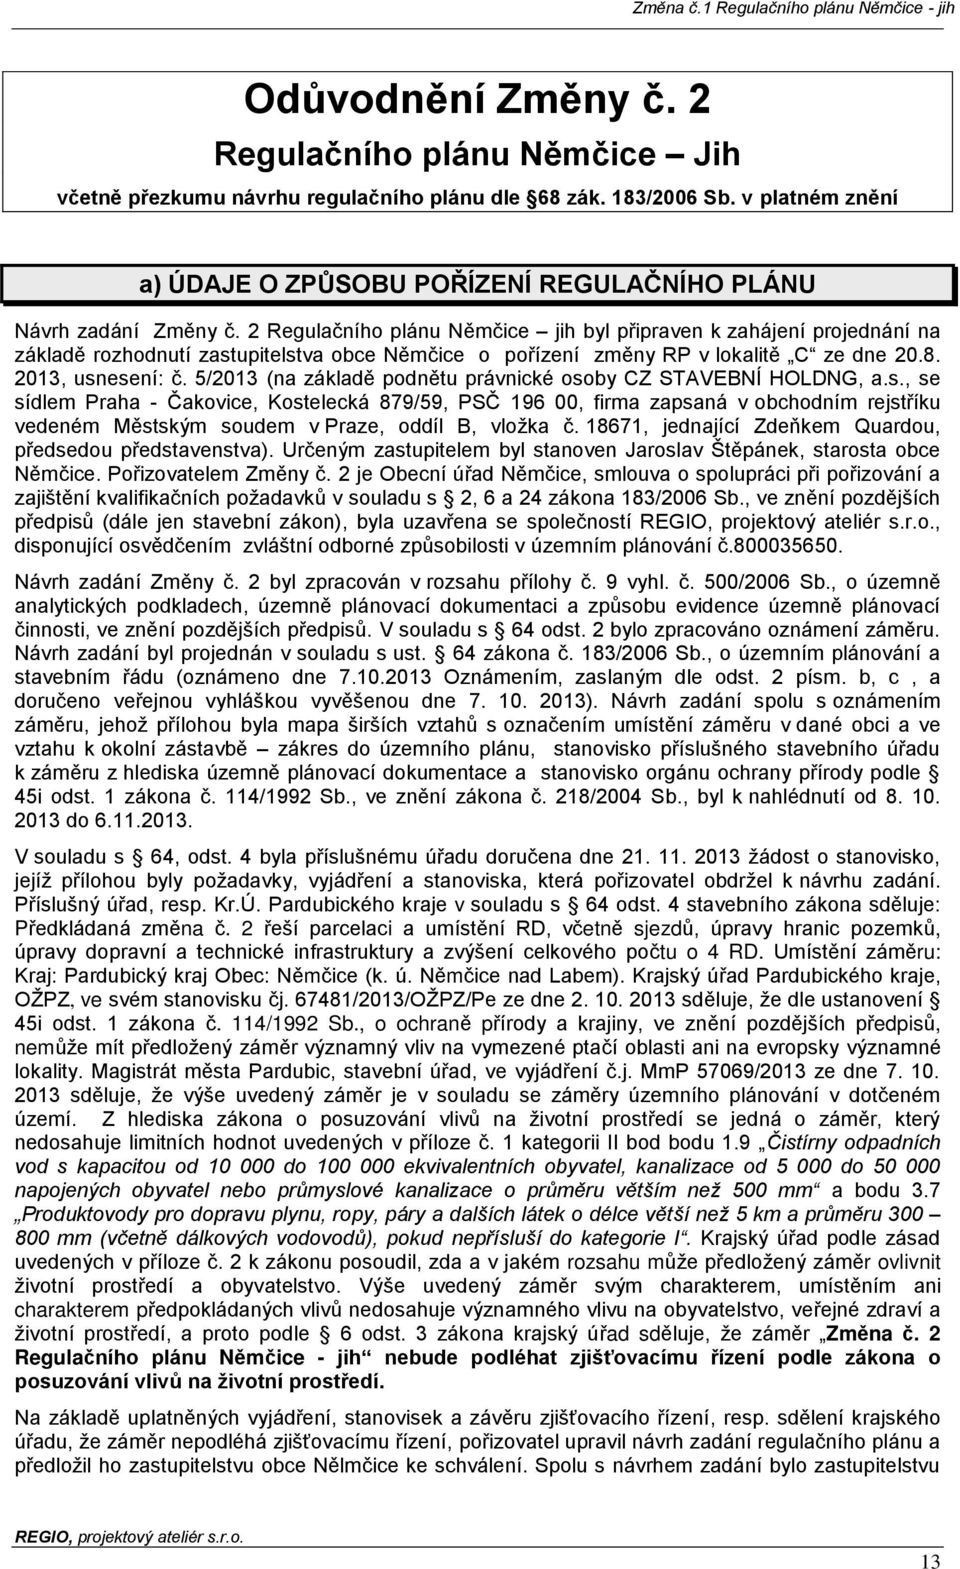 2 Regulačního plánu Němčice jih byl připraven k zahájení projednání na základě rozhodnutí zastupitelstva obce Němčice o pořízení změny RP v lokalitě C ze dne 20.8. 2013, usnesení: č.